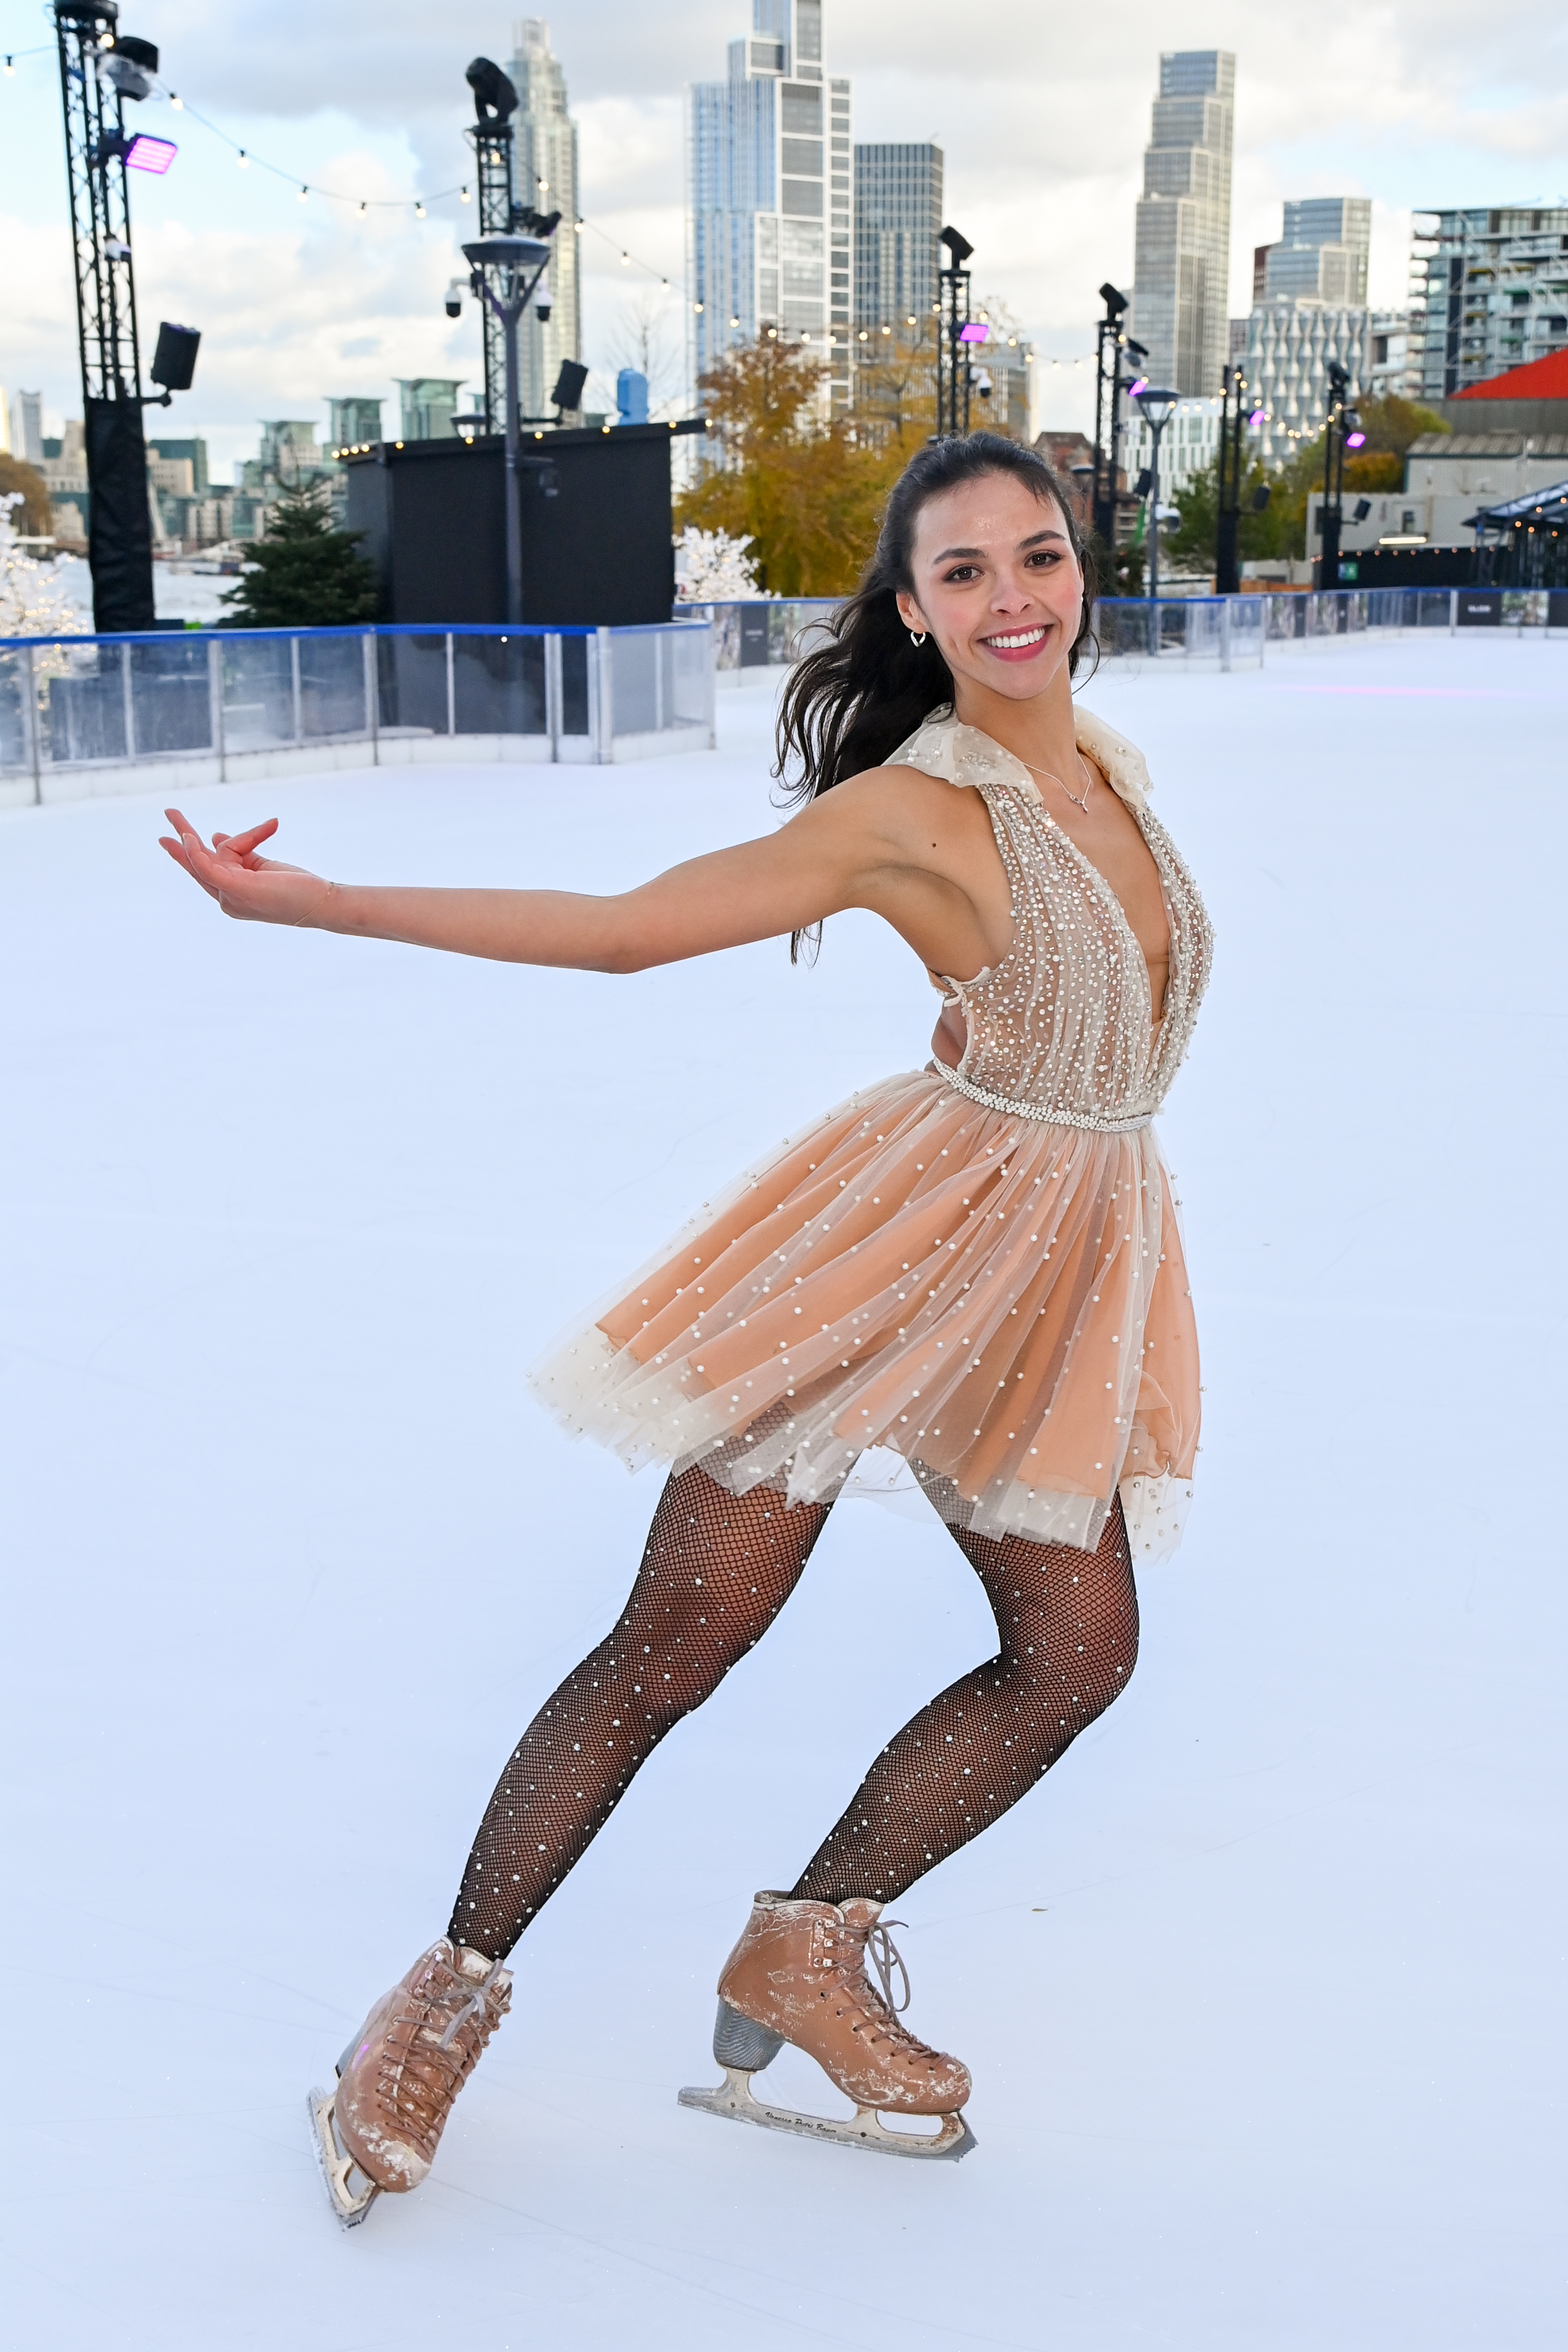 Vanessa ist seitdem Profi-Eisläuferin bei Dancing On Ice